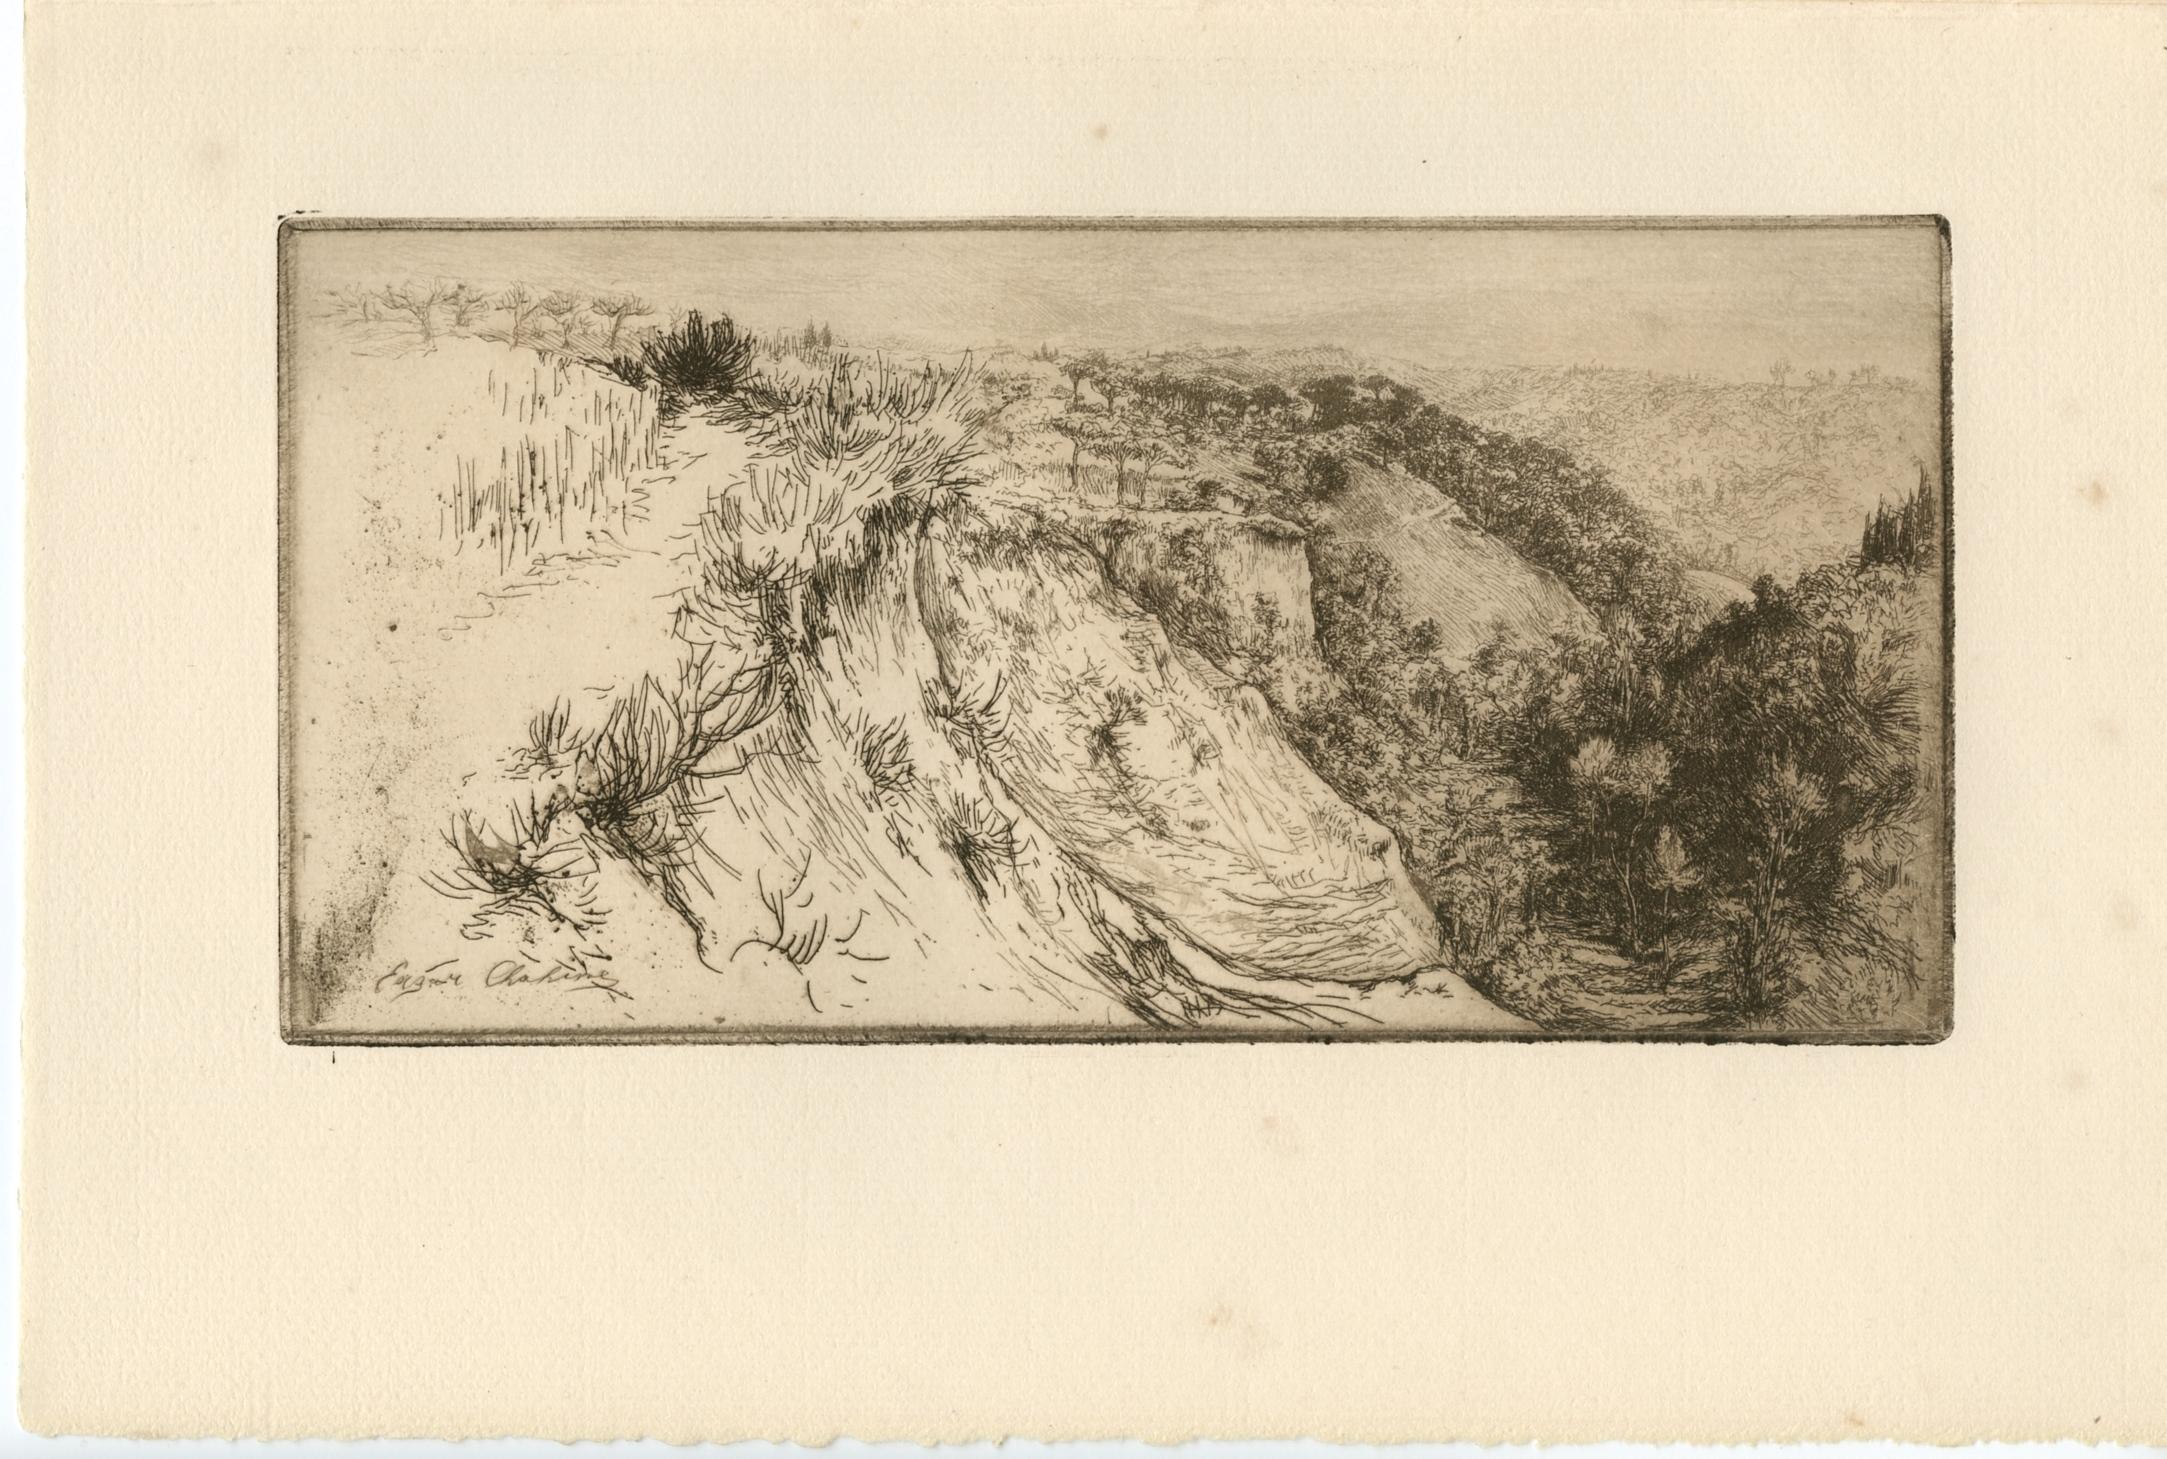 Edgar Chahine Landscape Print - "La vallee fertile, pres Monte Oliveto Maggiore" original etching